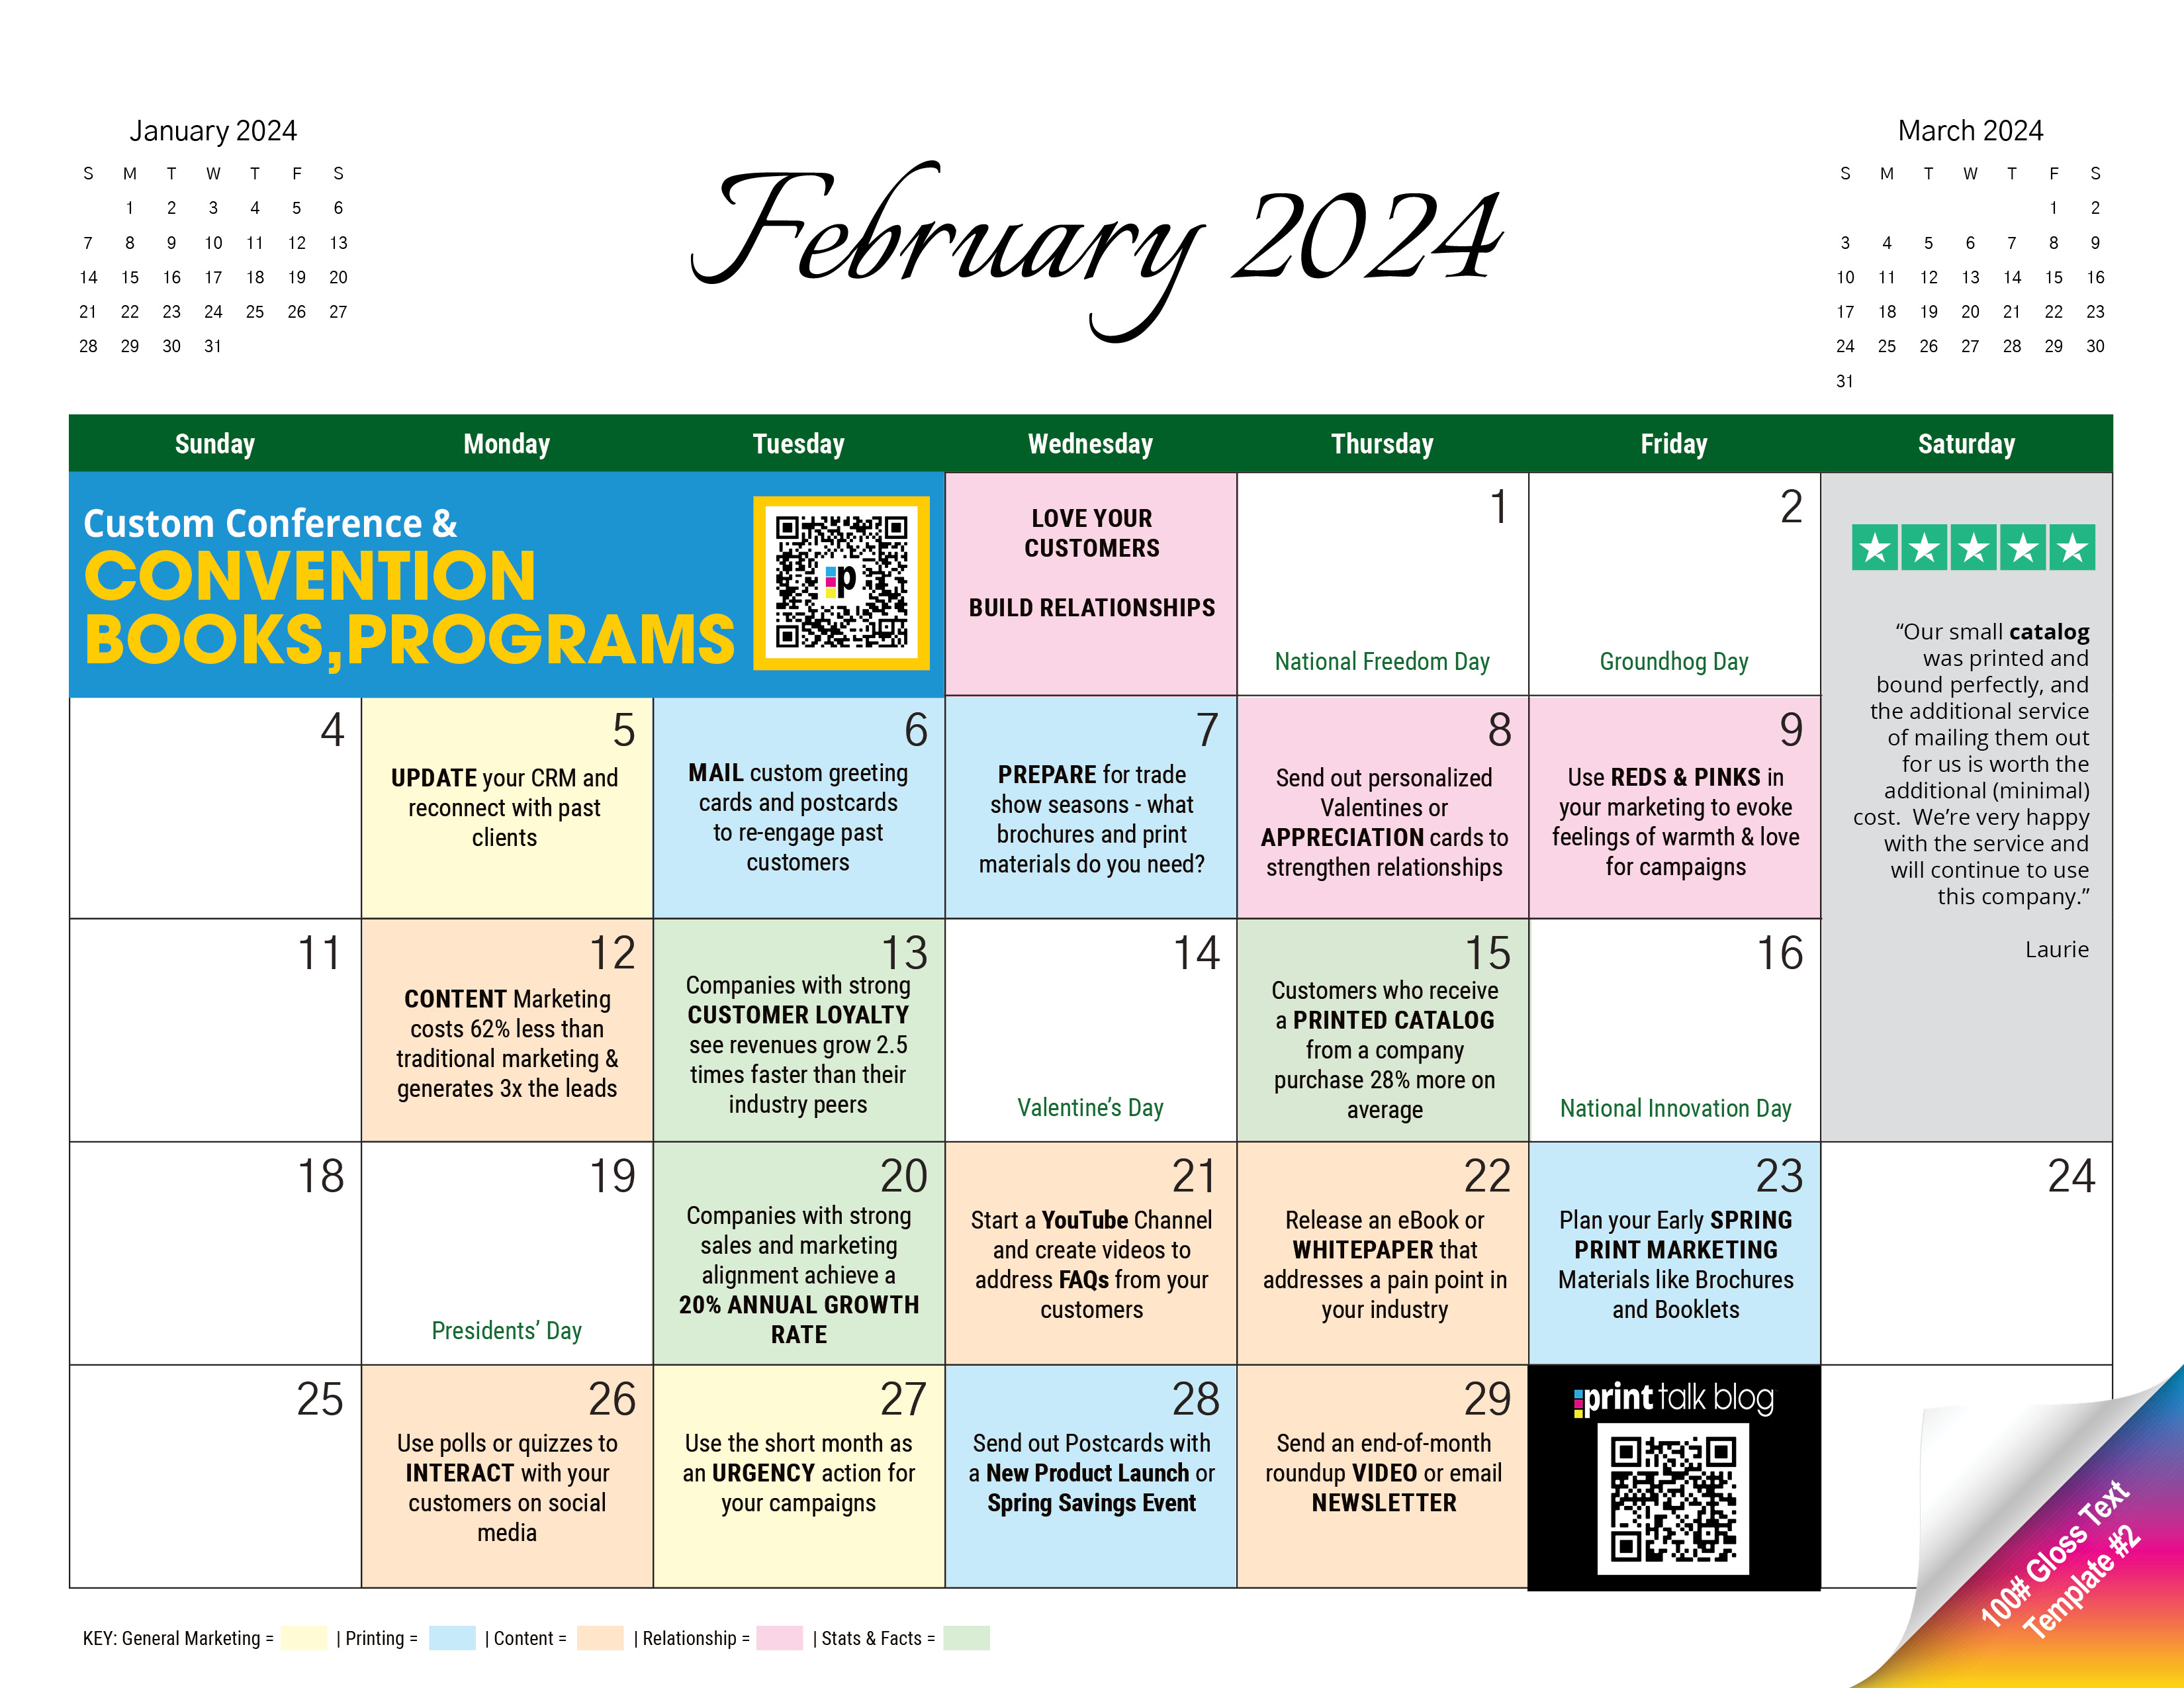 February 2024 Content Calendar